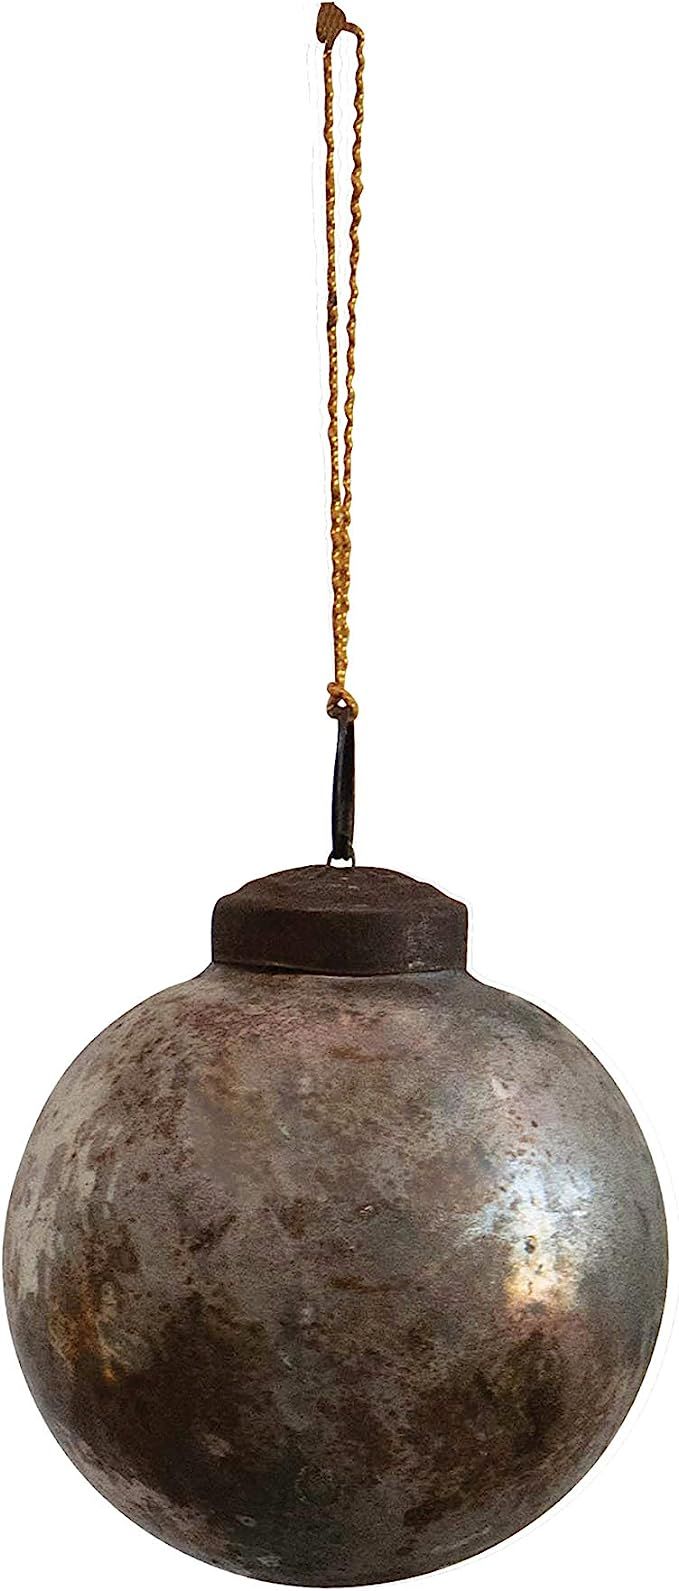 Creative Co-Op 3" Round Mercury Ball, Copper w/Verdigris Finish Glass Ornaments, Multi | Amazon (US)